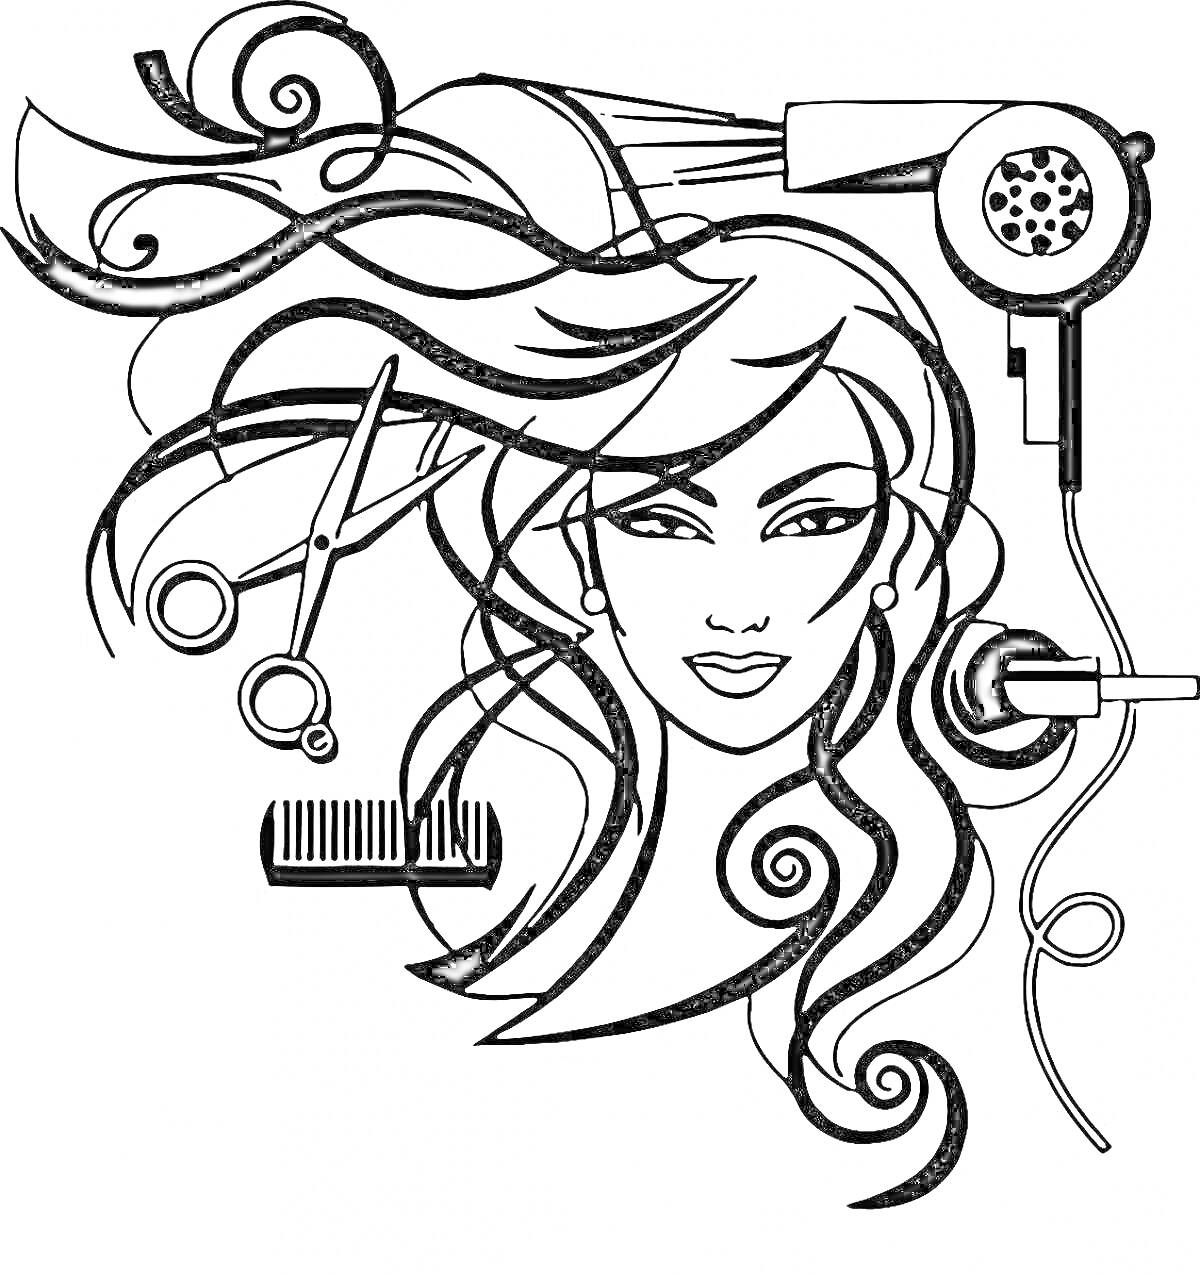 Раскраска Женское лицо с длинными волосами, фен, ножницы, гребень